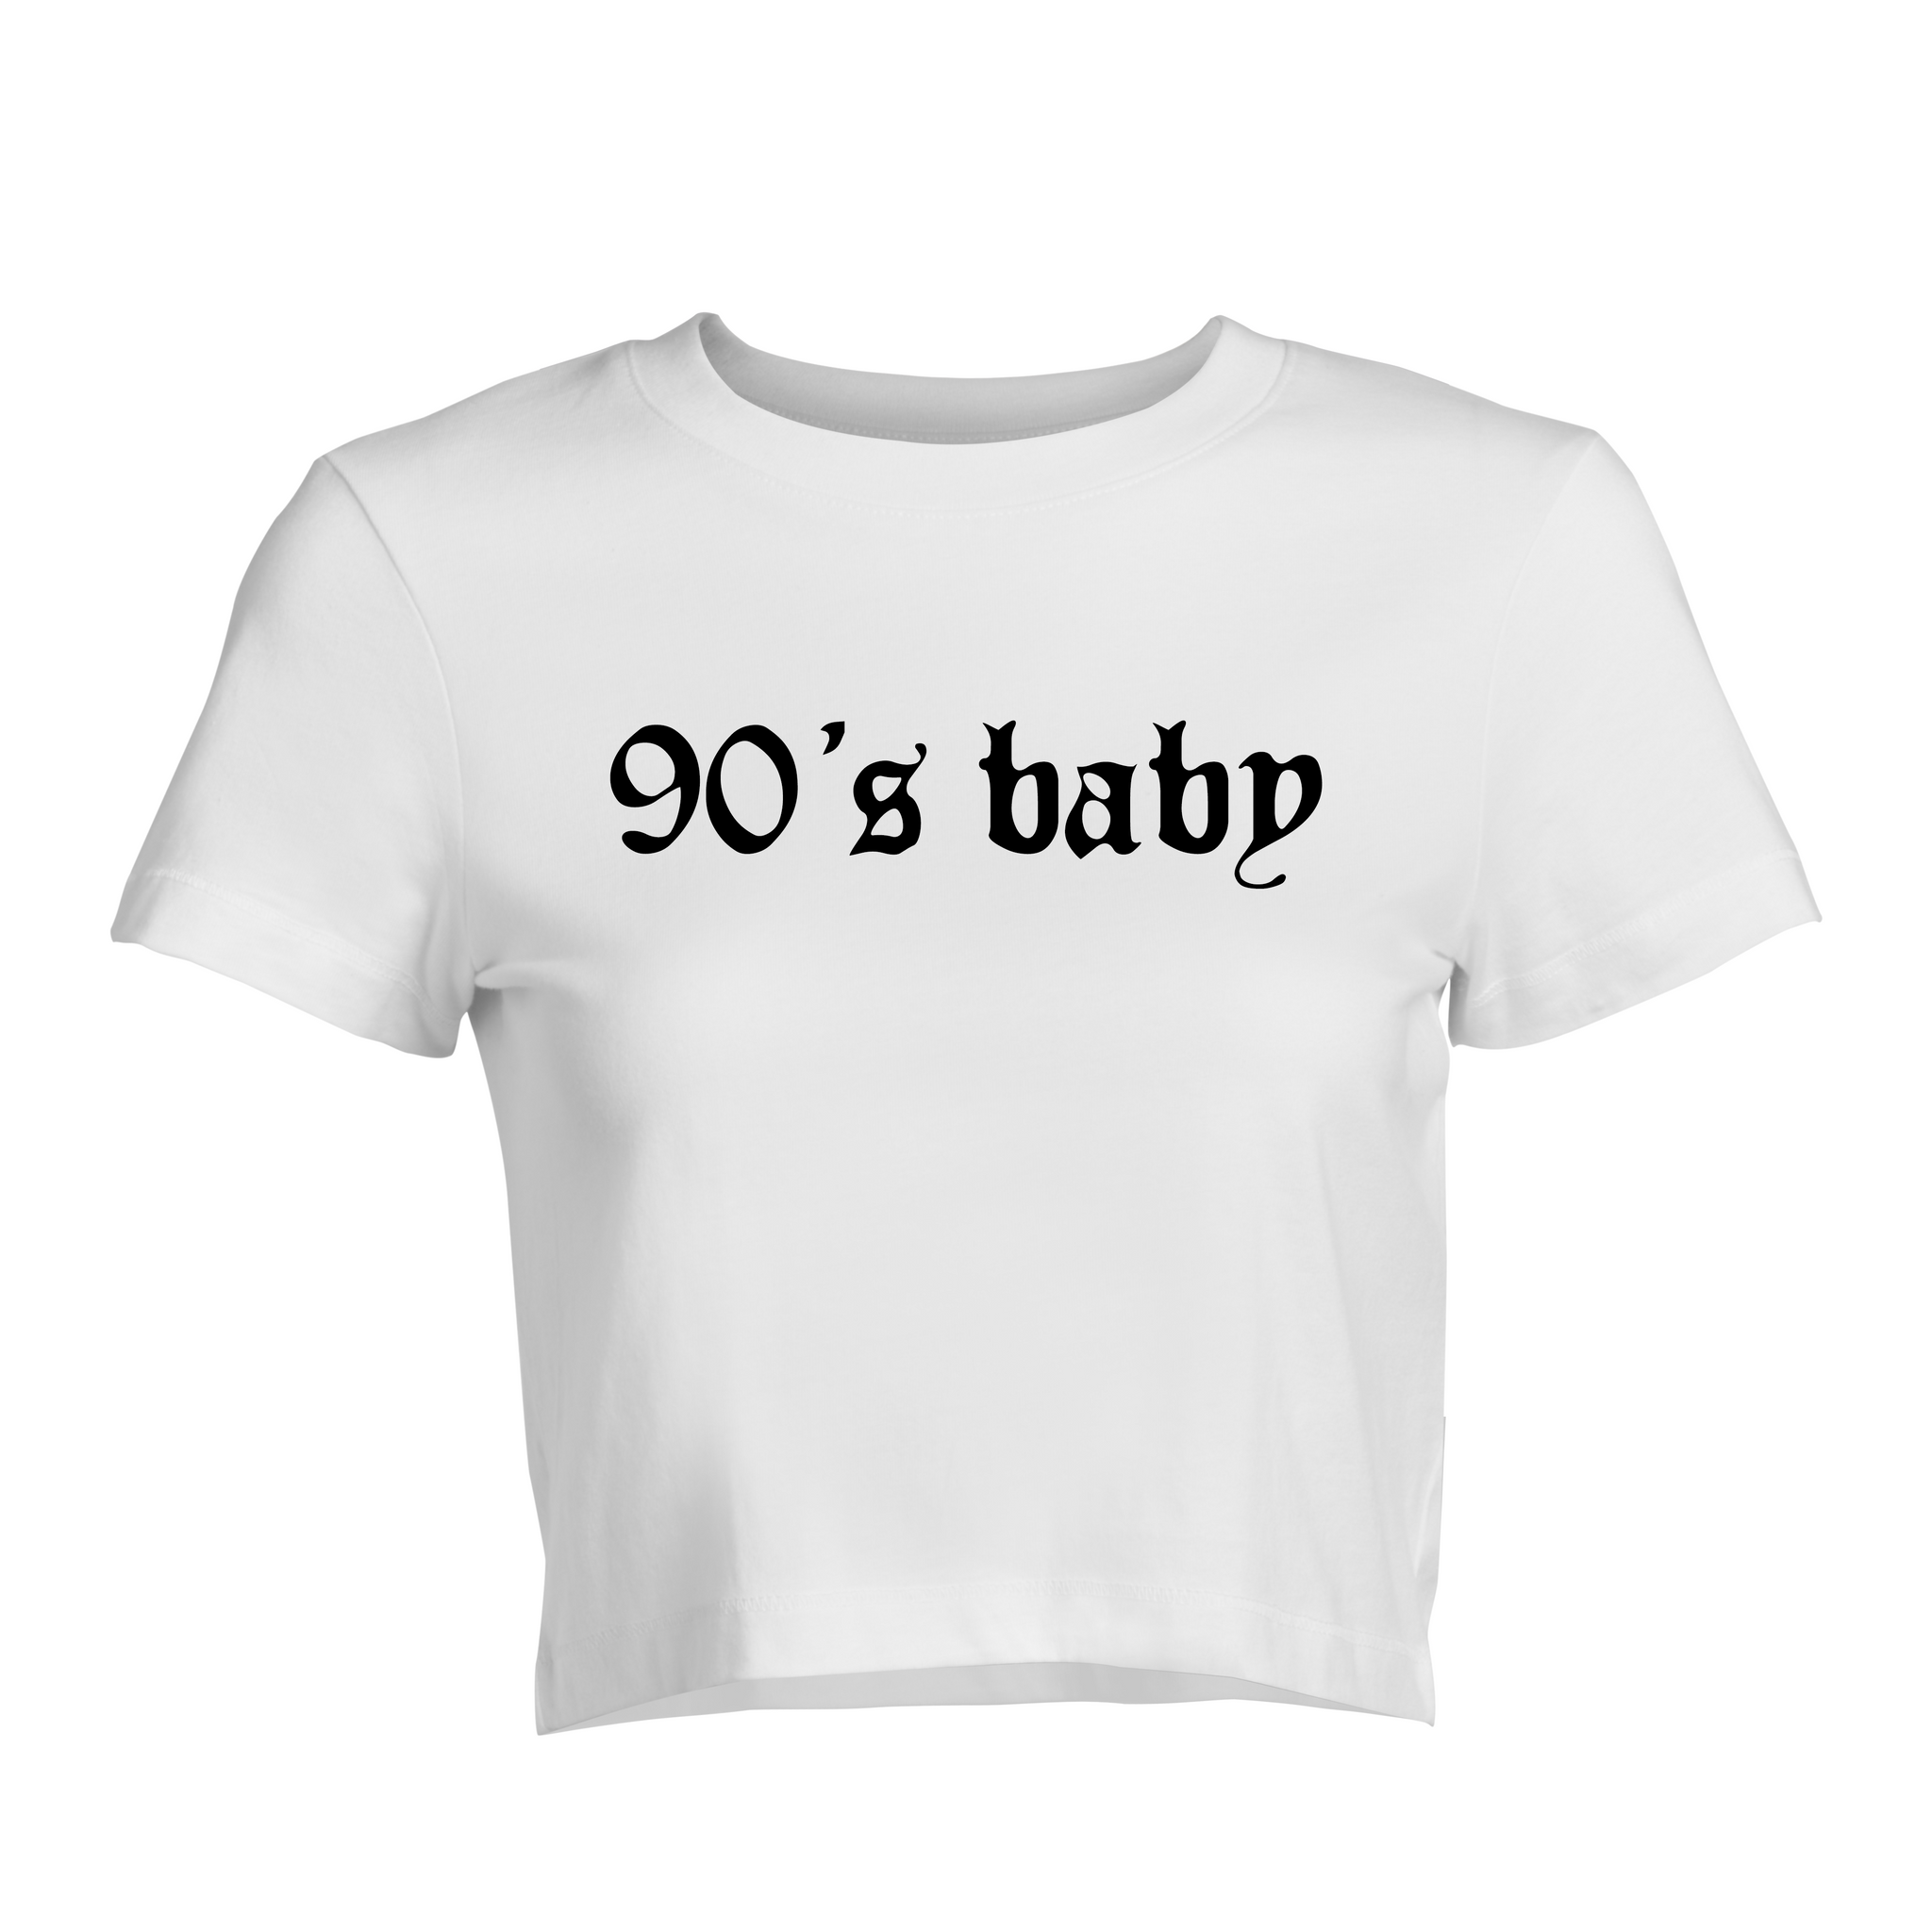 90s Baby! Baby Tee | Crop Top